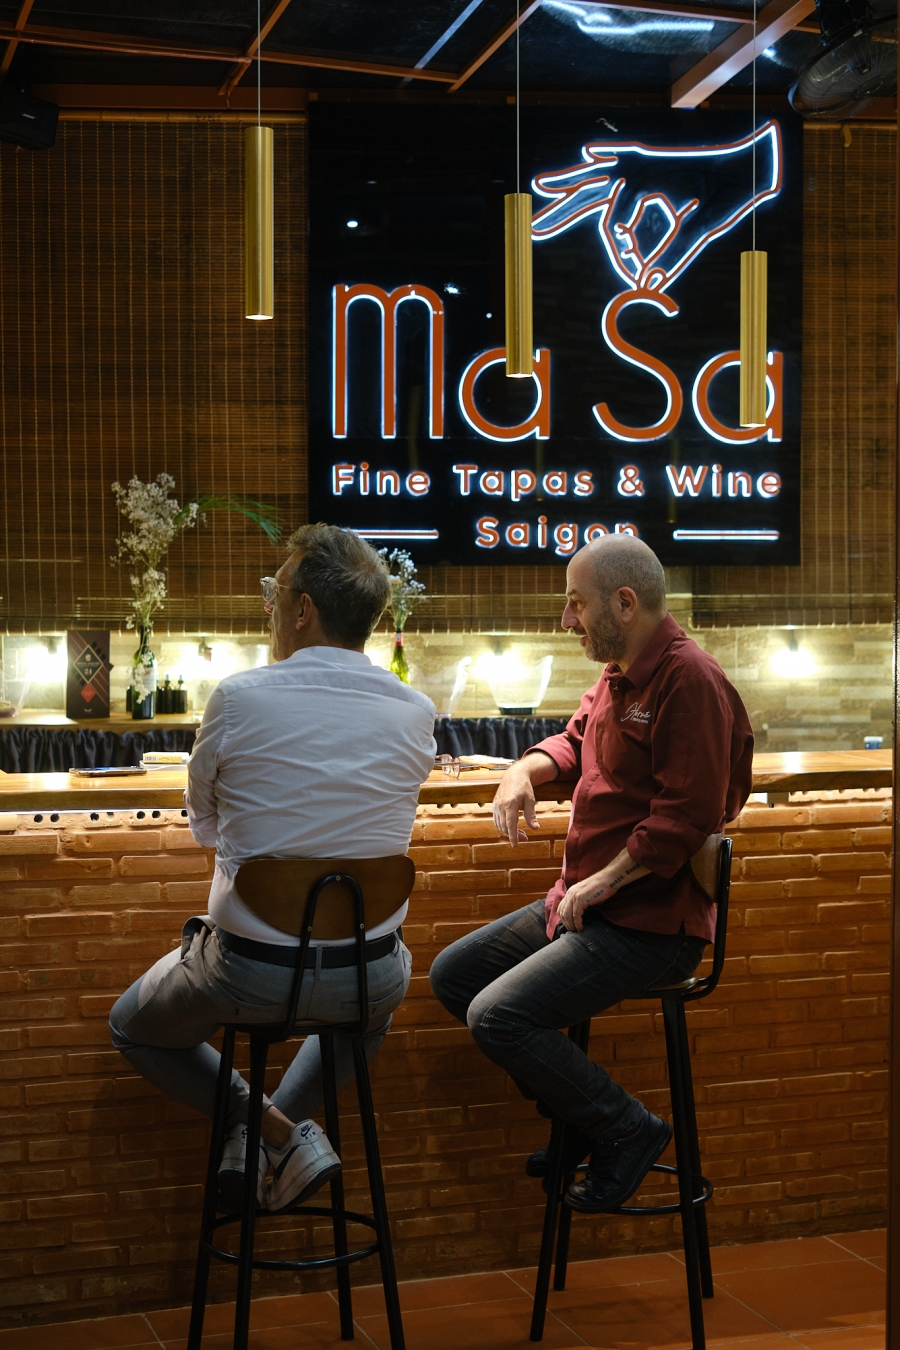 Hiện giờ, Benoît Chaigneau là Giám đốc Điều hành nhà hàng MaSa – Fine Tapas & Wine Saigon tại Thảo Điền do đầu bếp sao Michelin Hervé Rodriguez sáng lập